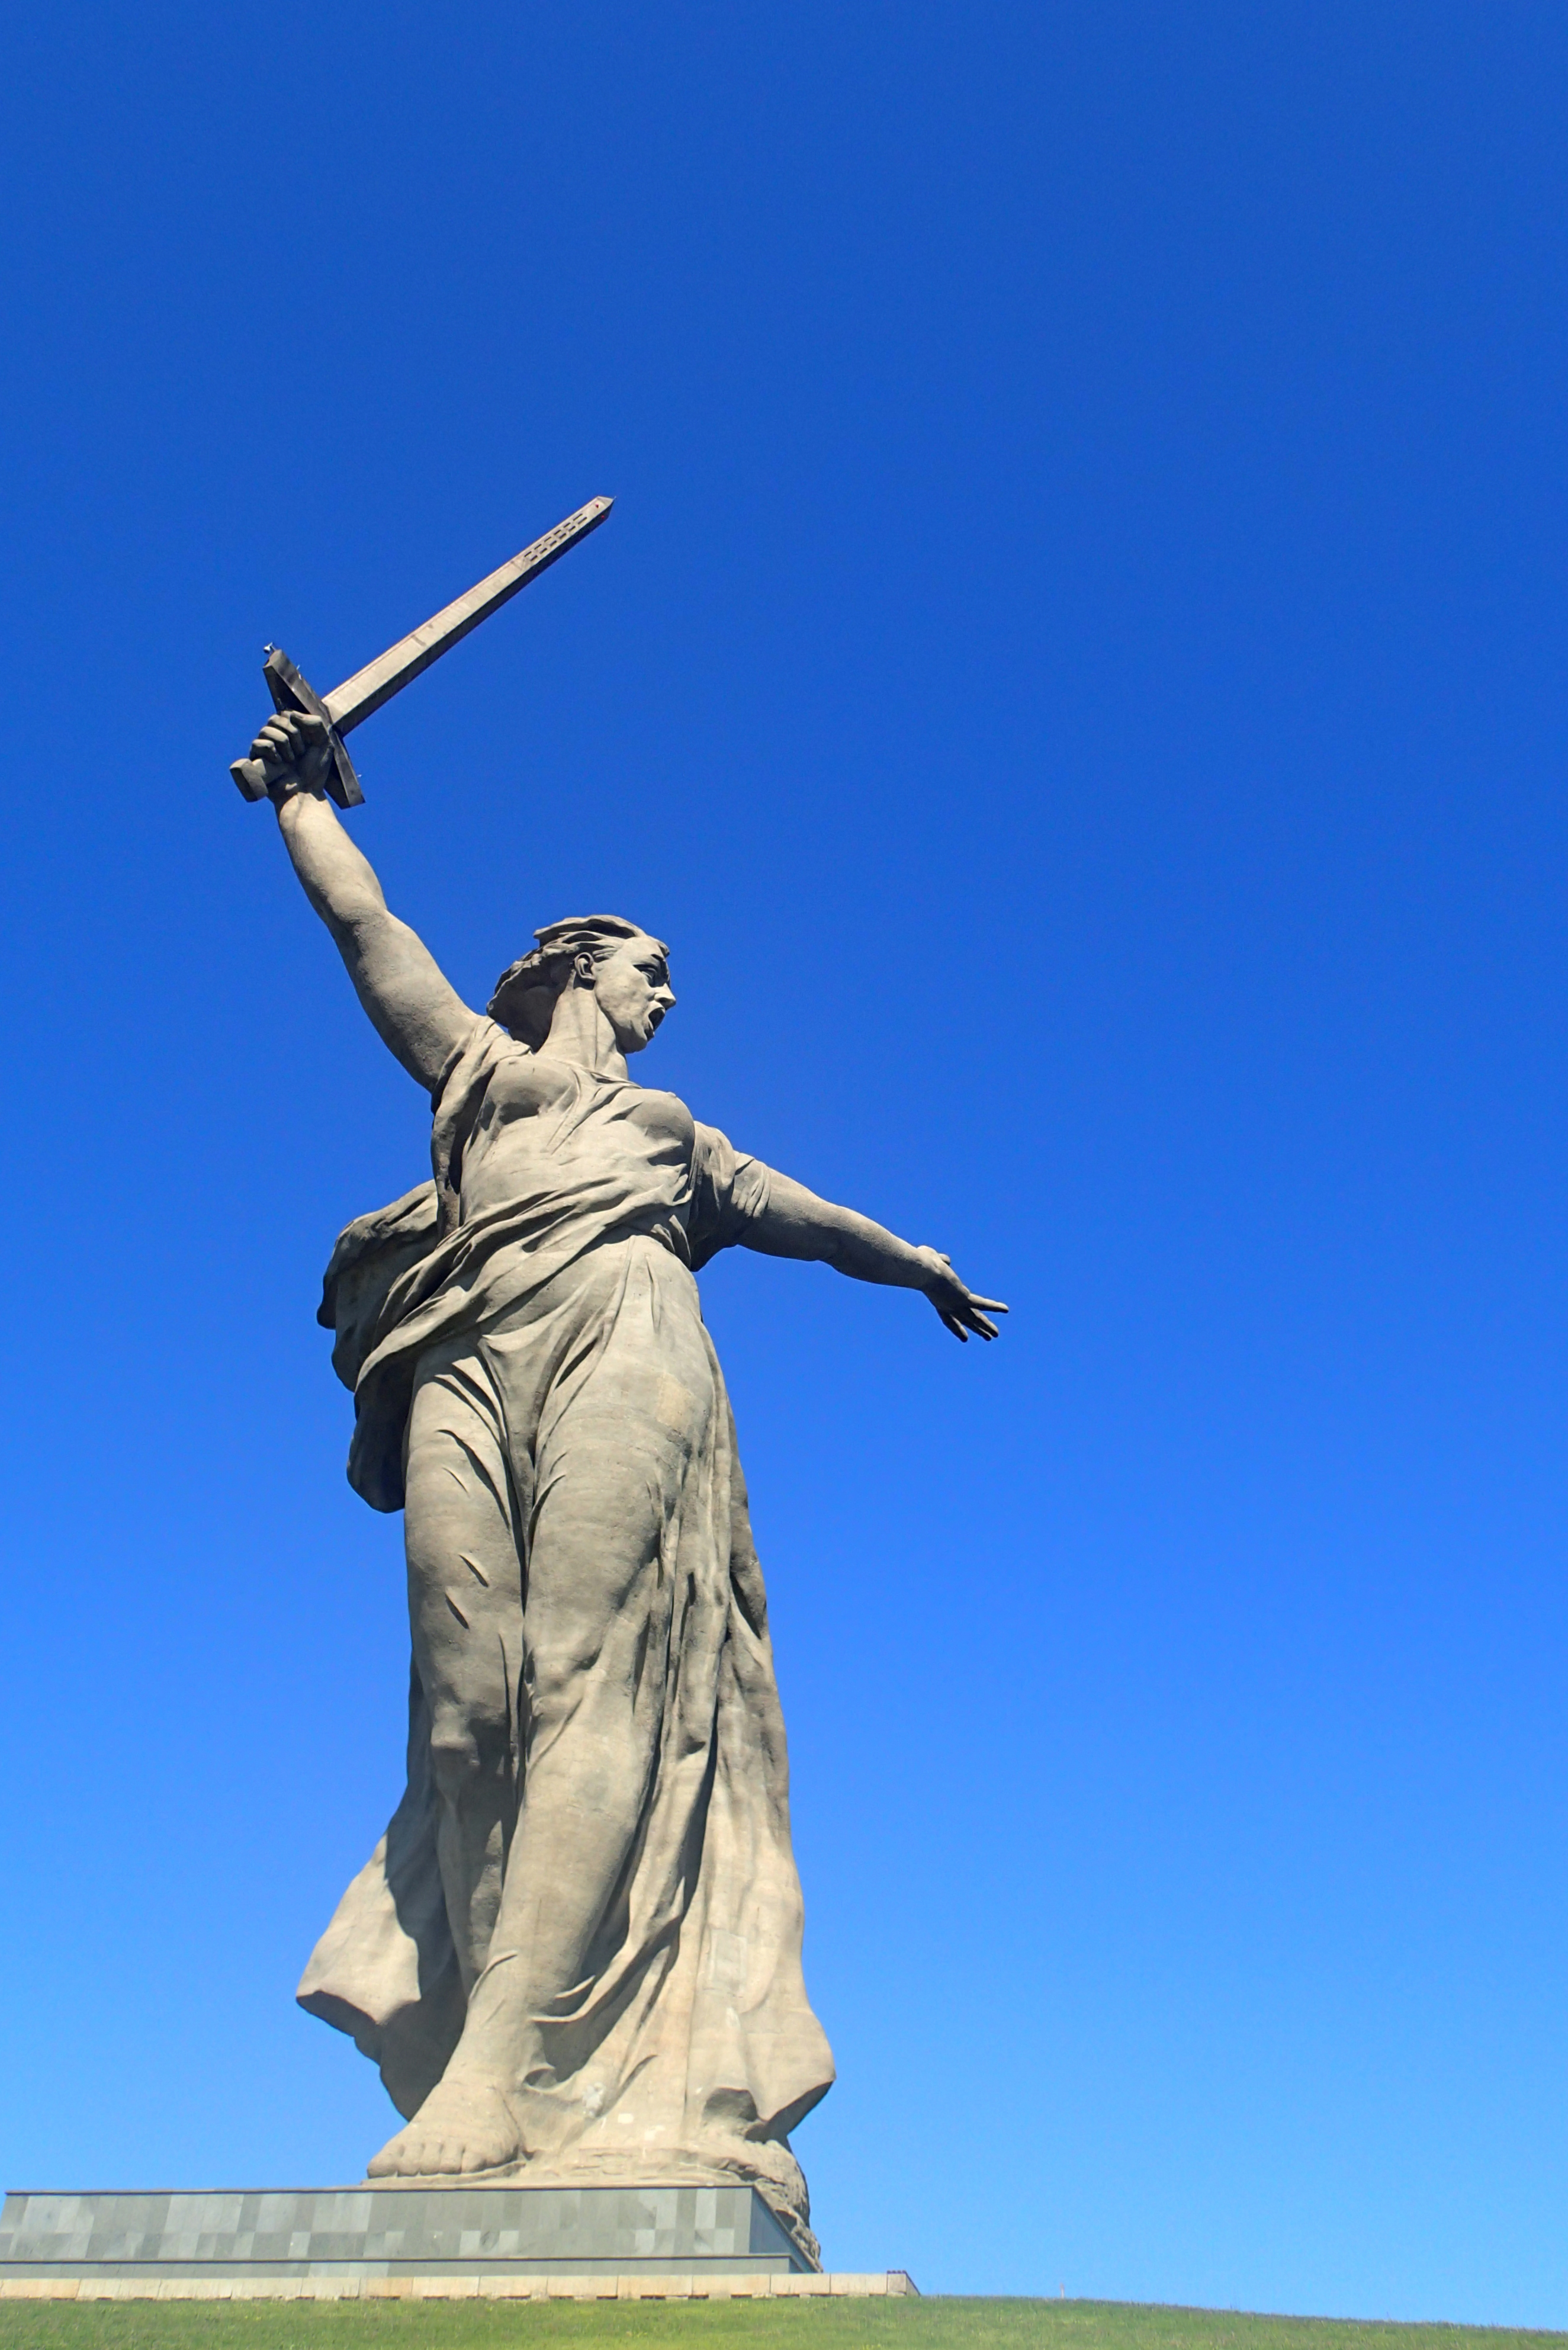 Het vrijheidsbeeld van Volgograd. Het hoogste beeld te wereld! (ja, hoger dan dat in New York dus)